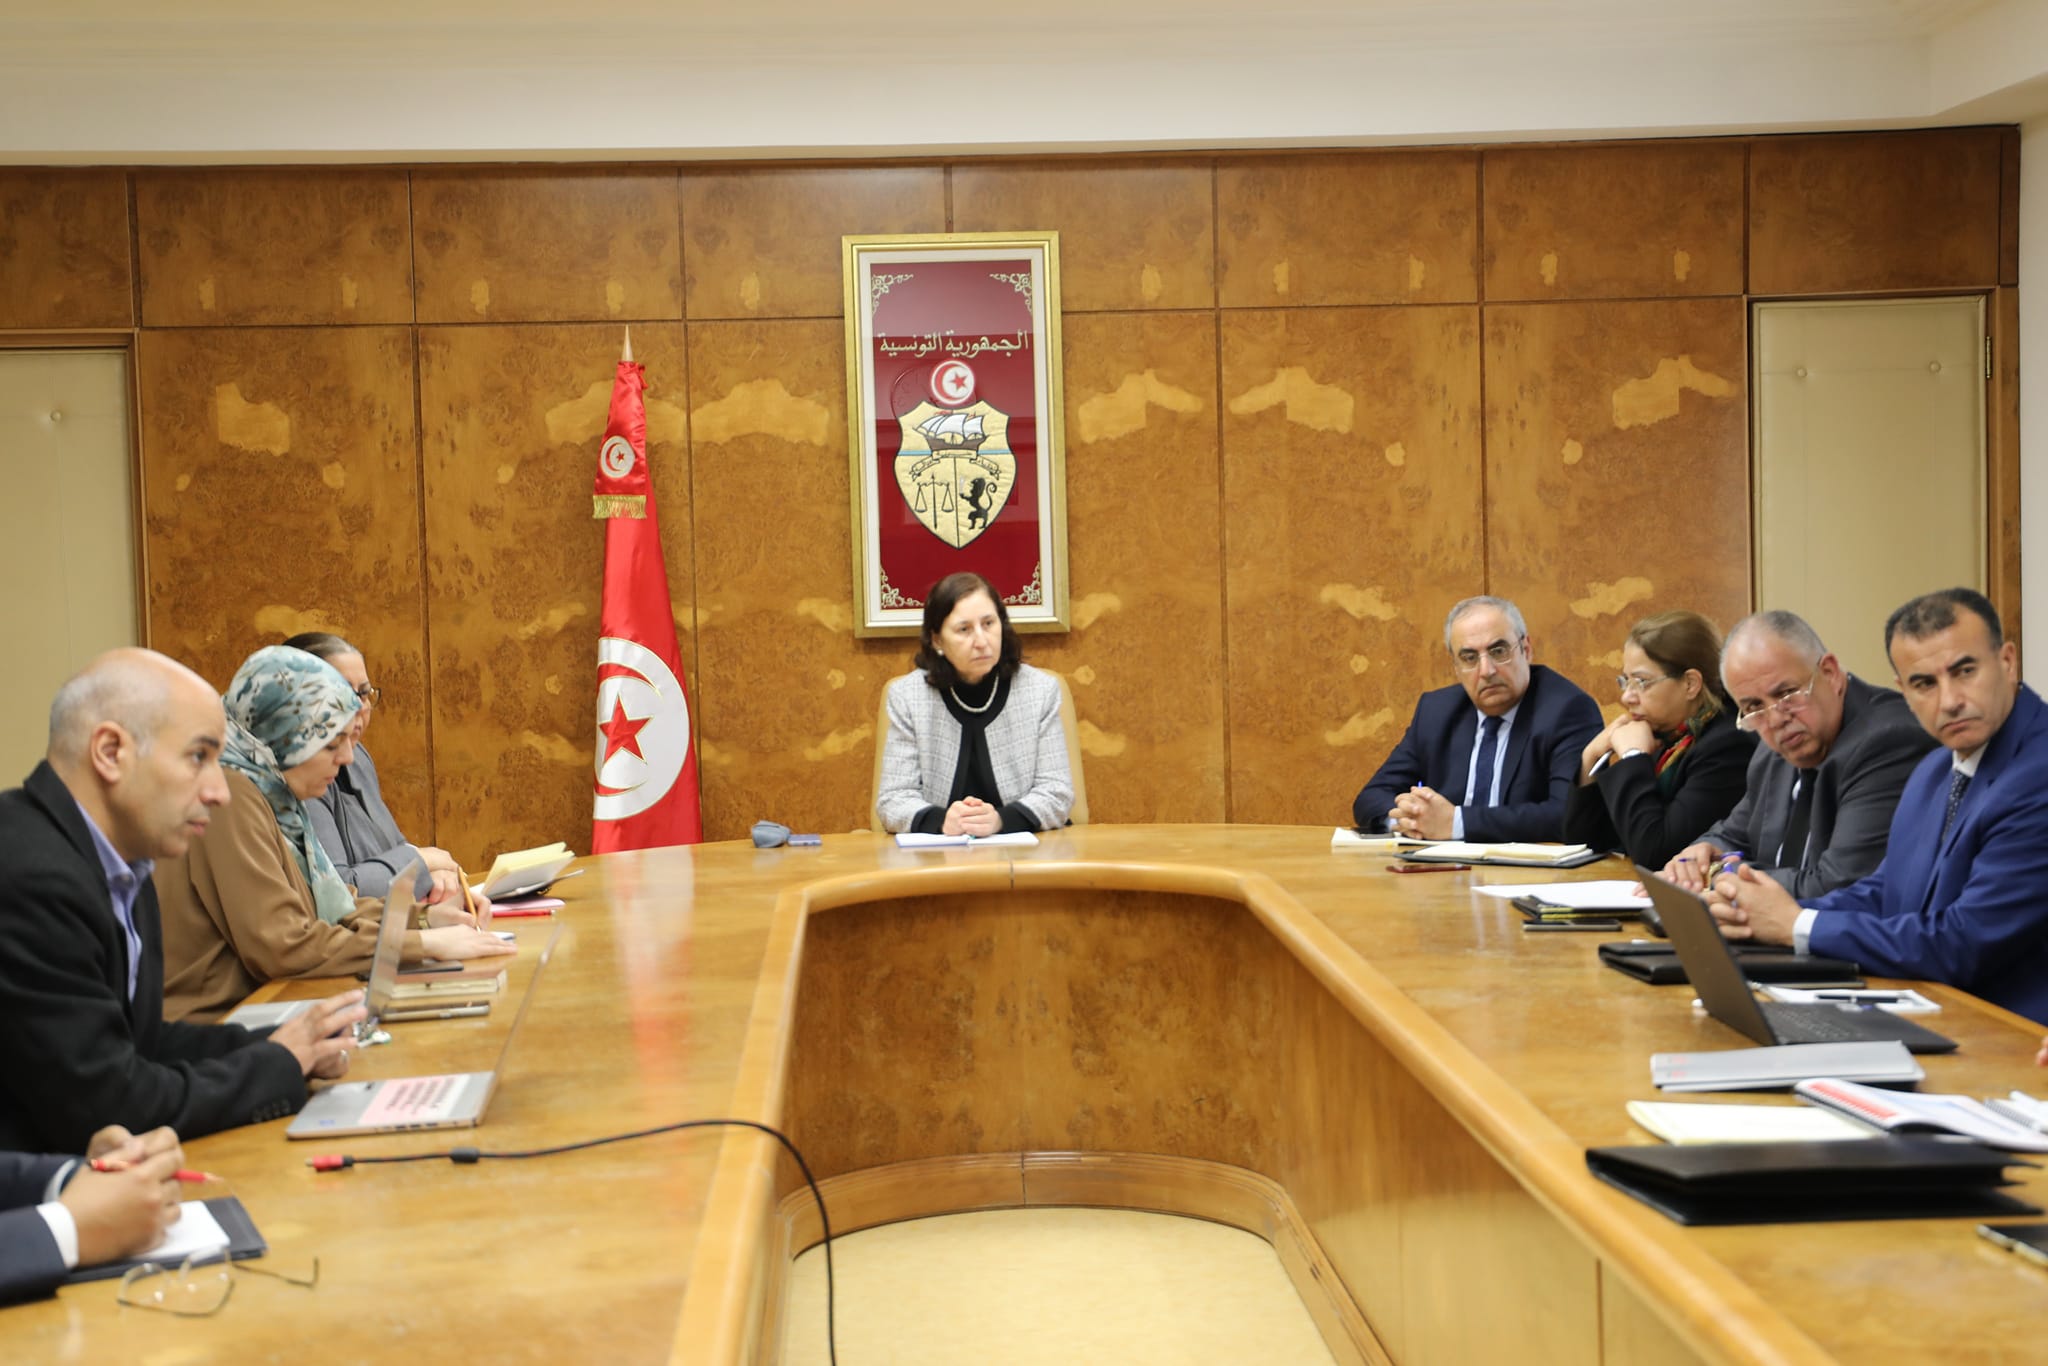 إعادة هيكلة الخطوط التونسية/ وزيرة النقل تدعو للتسريع بتحيين البرنامج